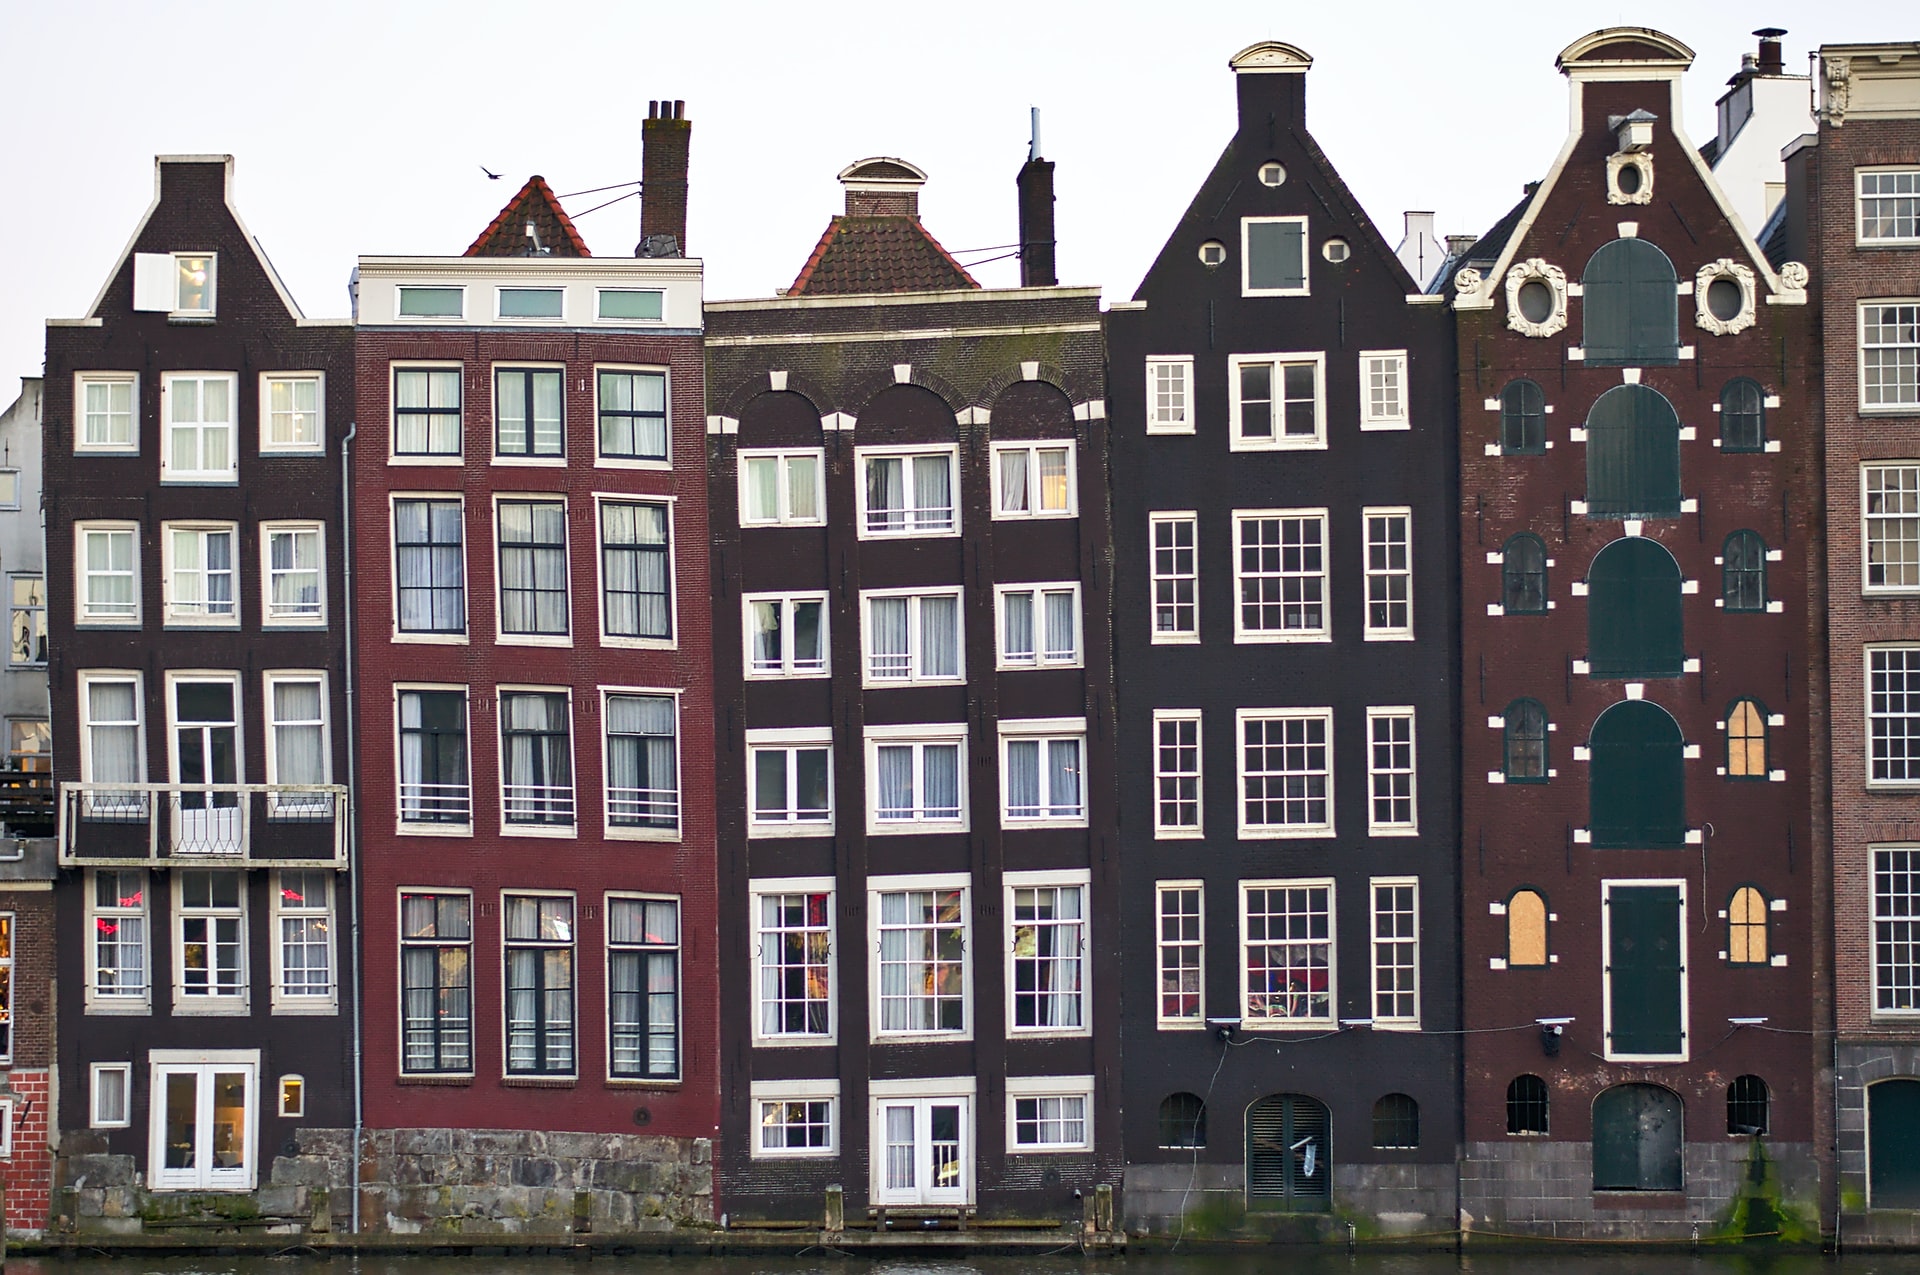 En elektronisk sammensmeltning af bygninger langs en Amsterdam-kanal.